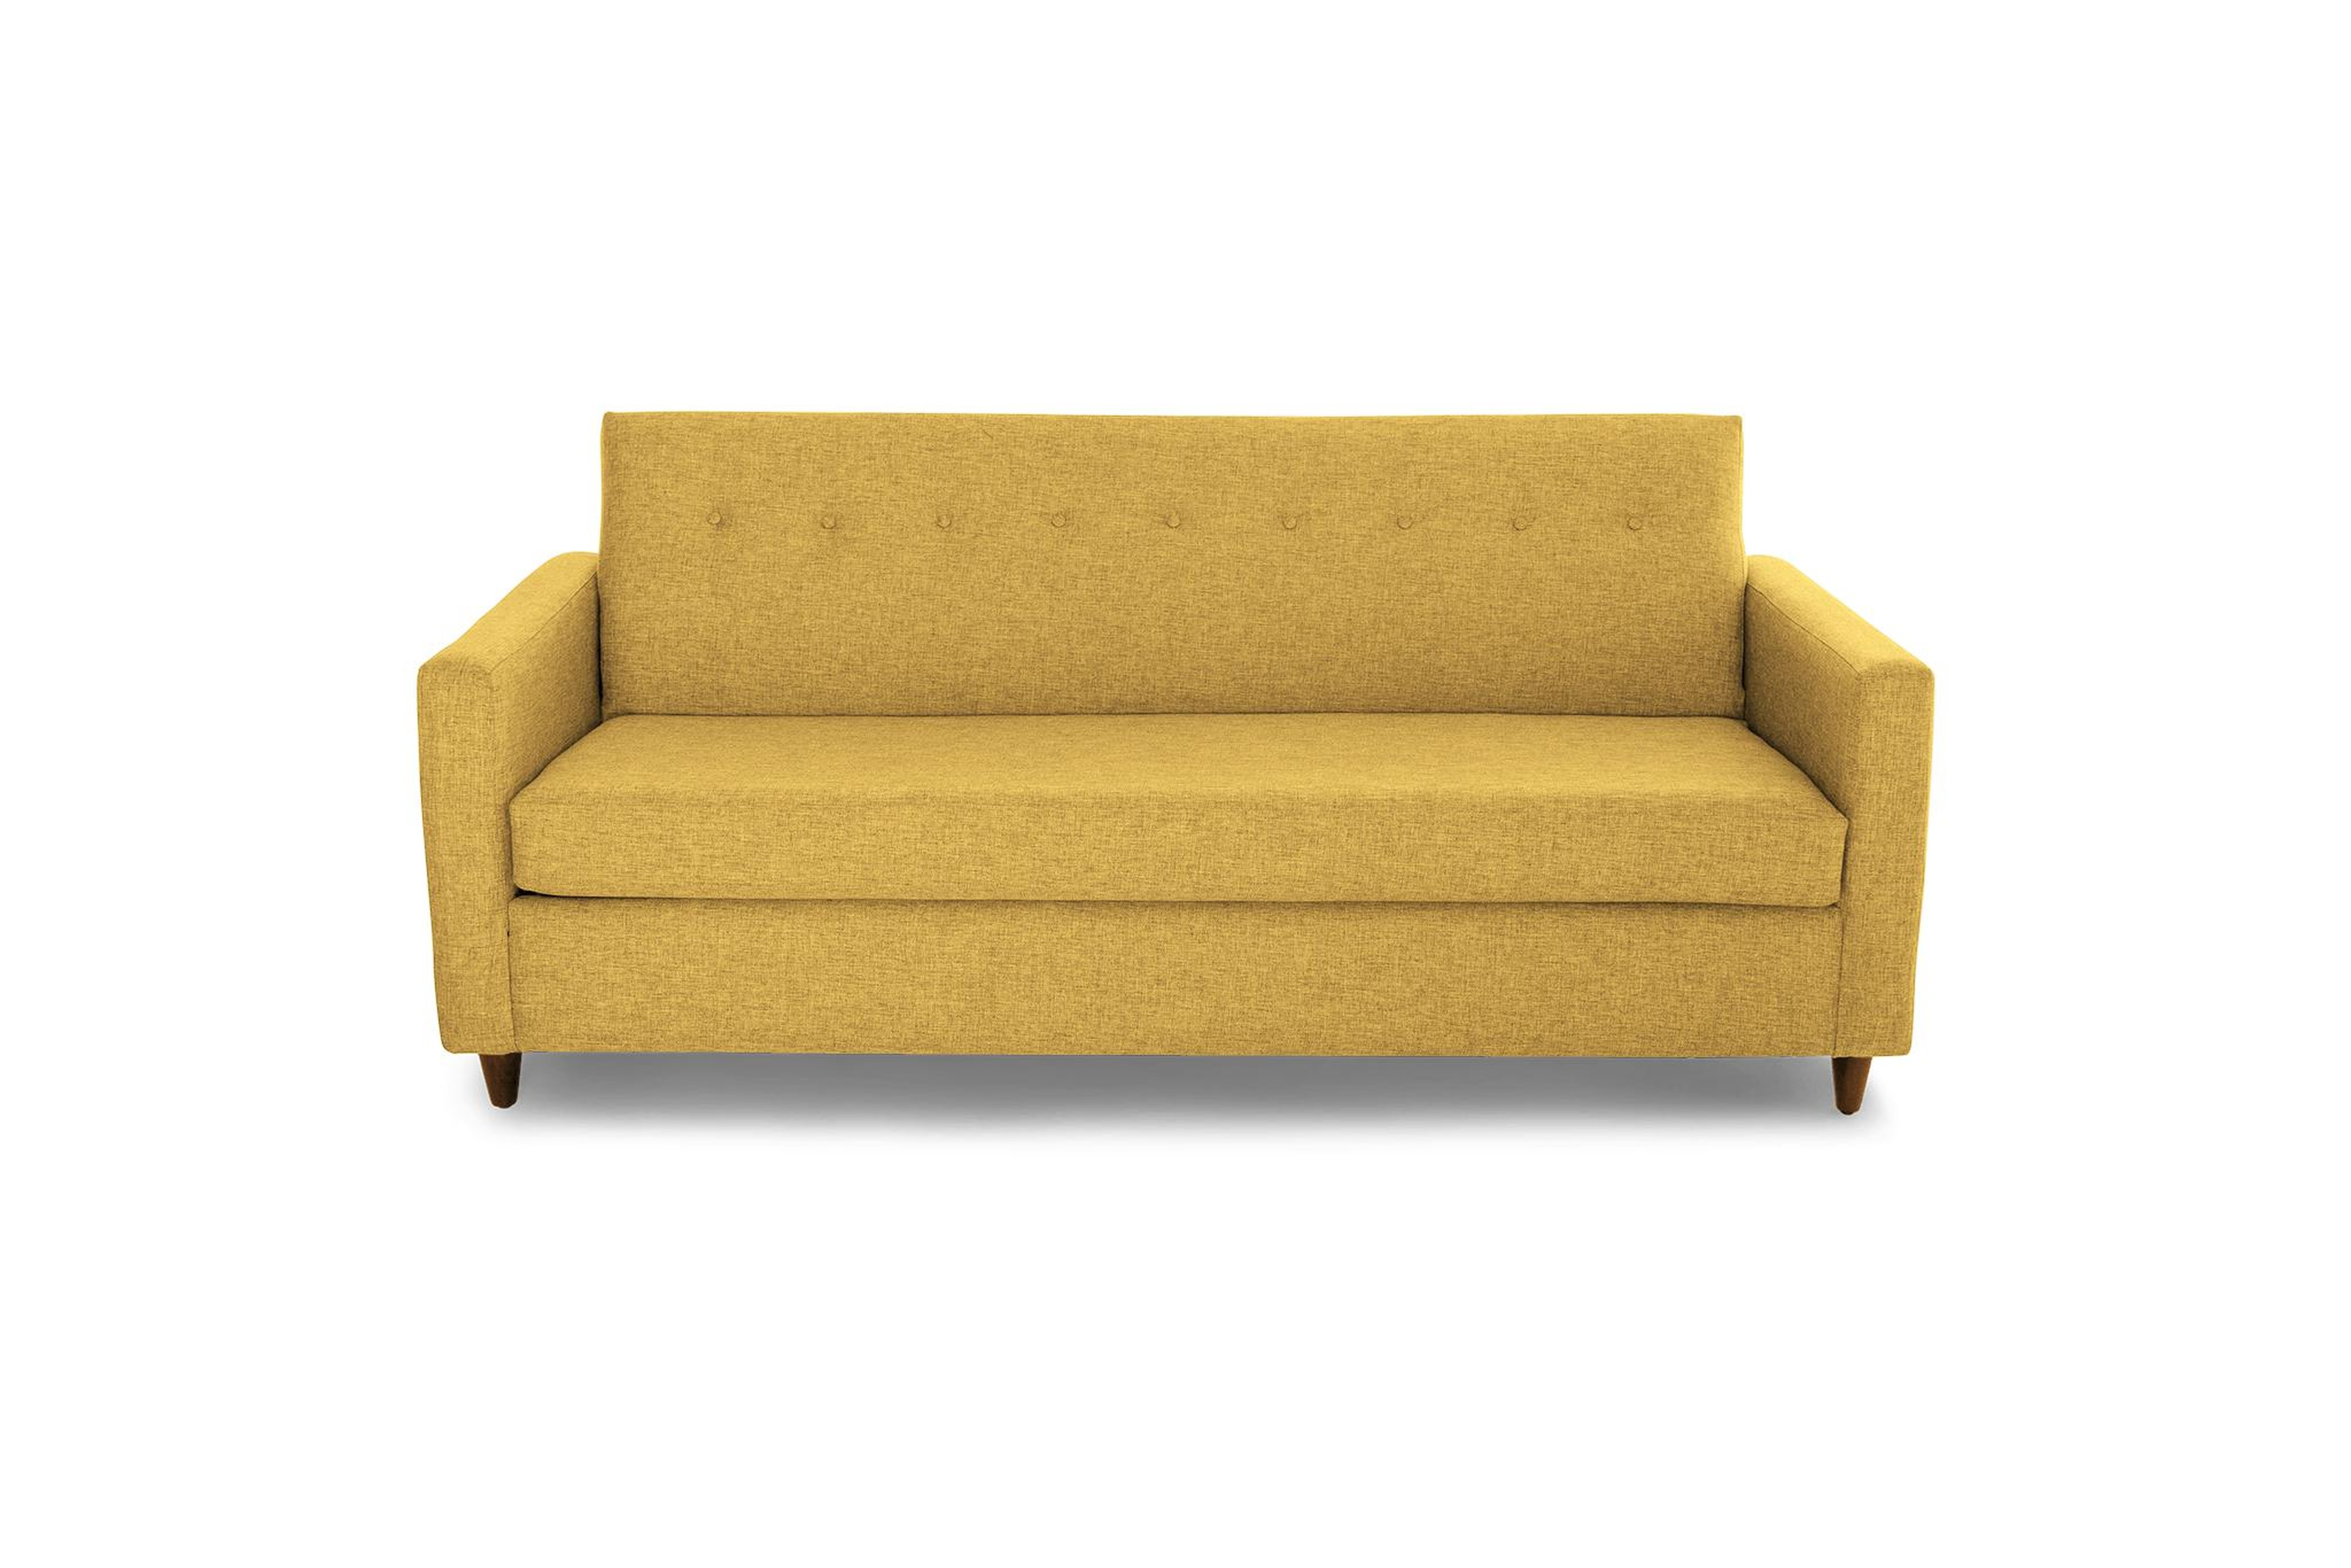 Yellow Korver Mid Century Modern Sleeper Sofa - Bentley Daisey - Mocha - Joybird